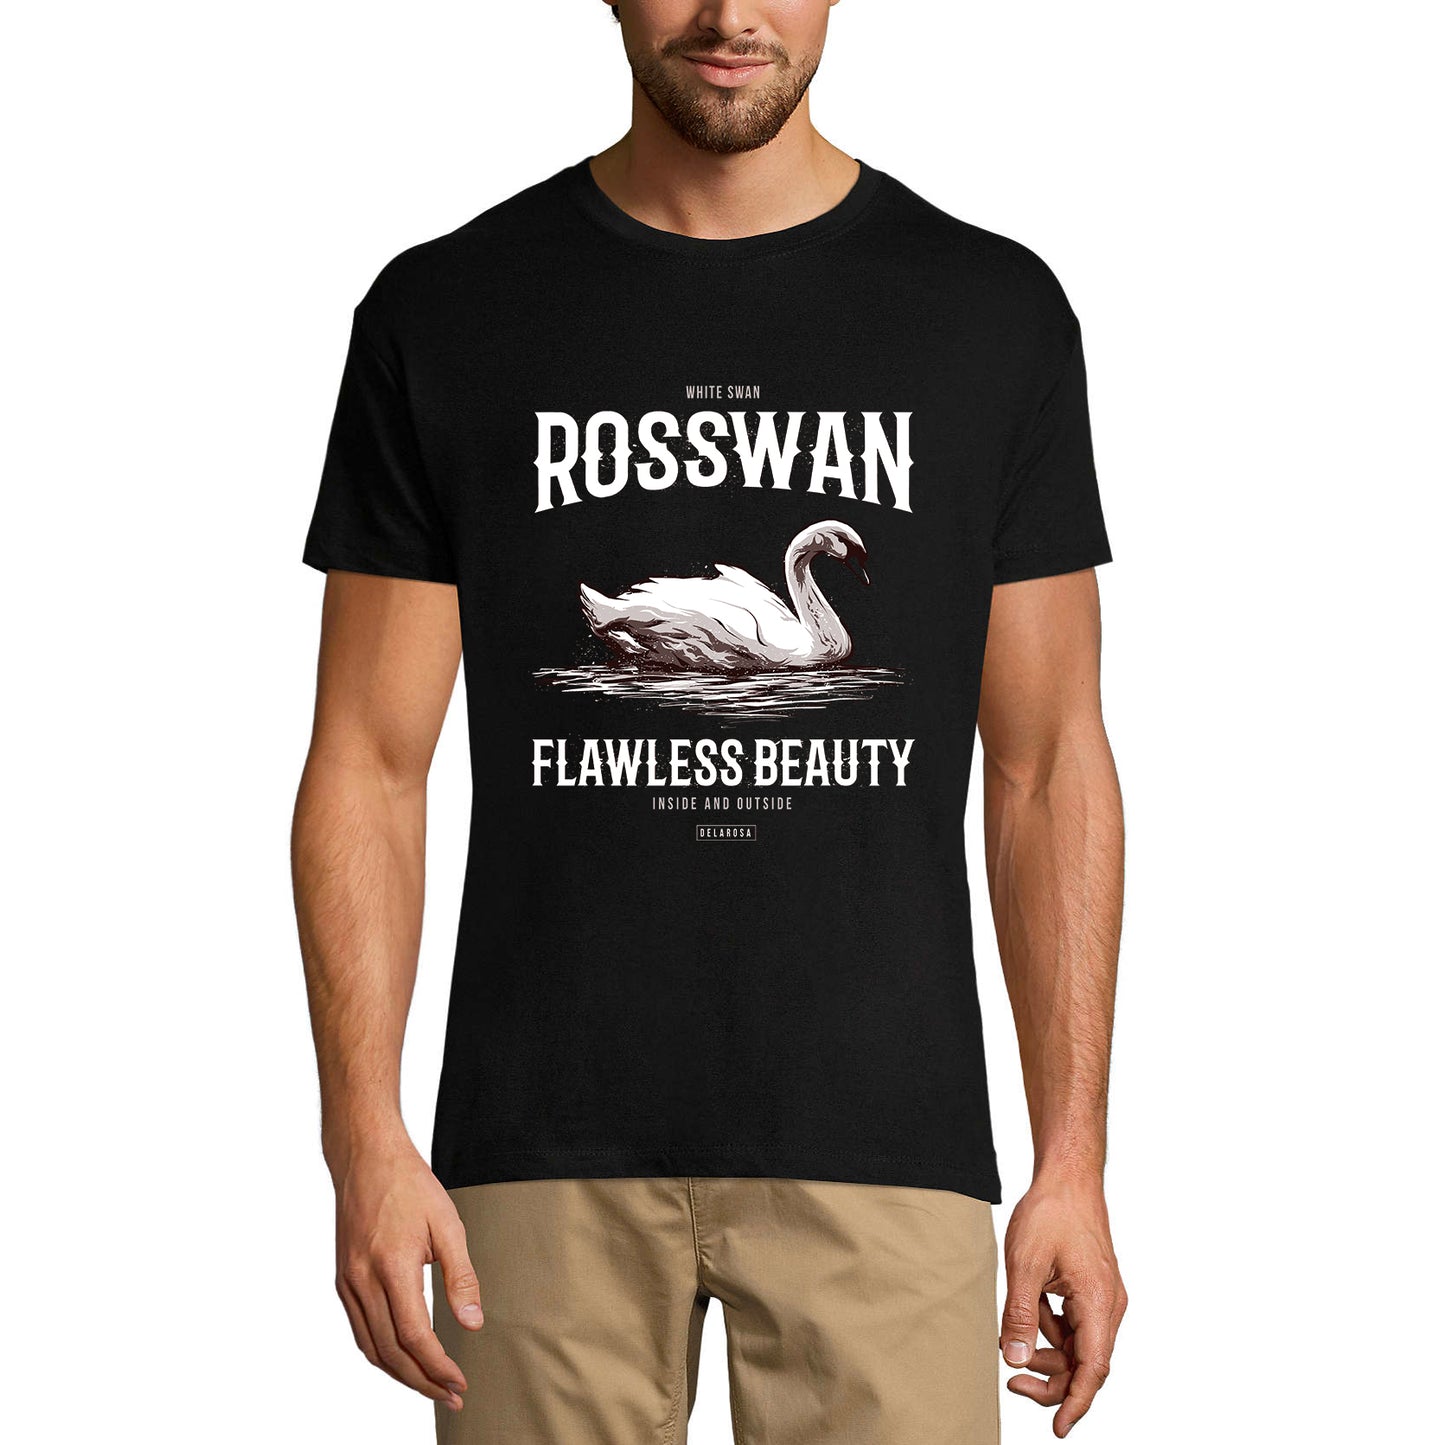 ULTRABASIC Men's Graphic T-Shirt White Swan Beauty - Rosswan Shirt